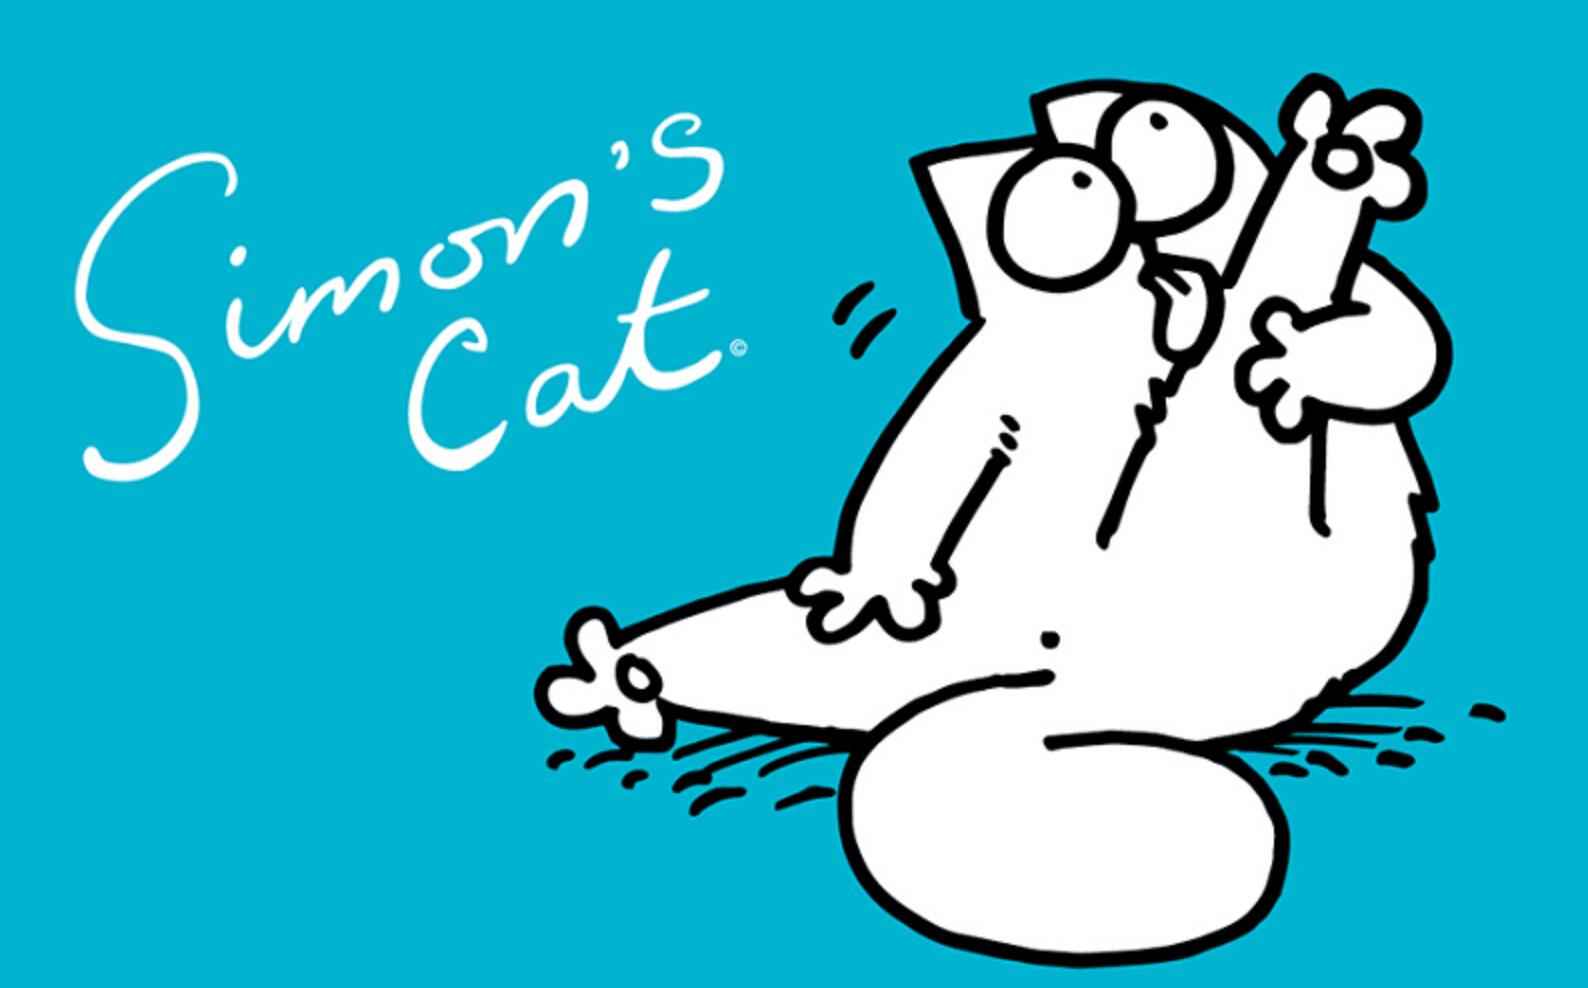 儿童搞笑益智动画短片《西蒙的猫 imon cat》全68集下载 mp4720p无对白